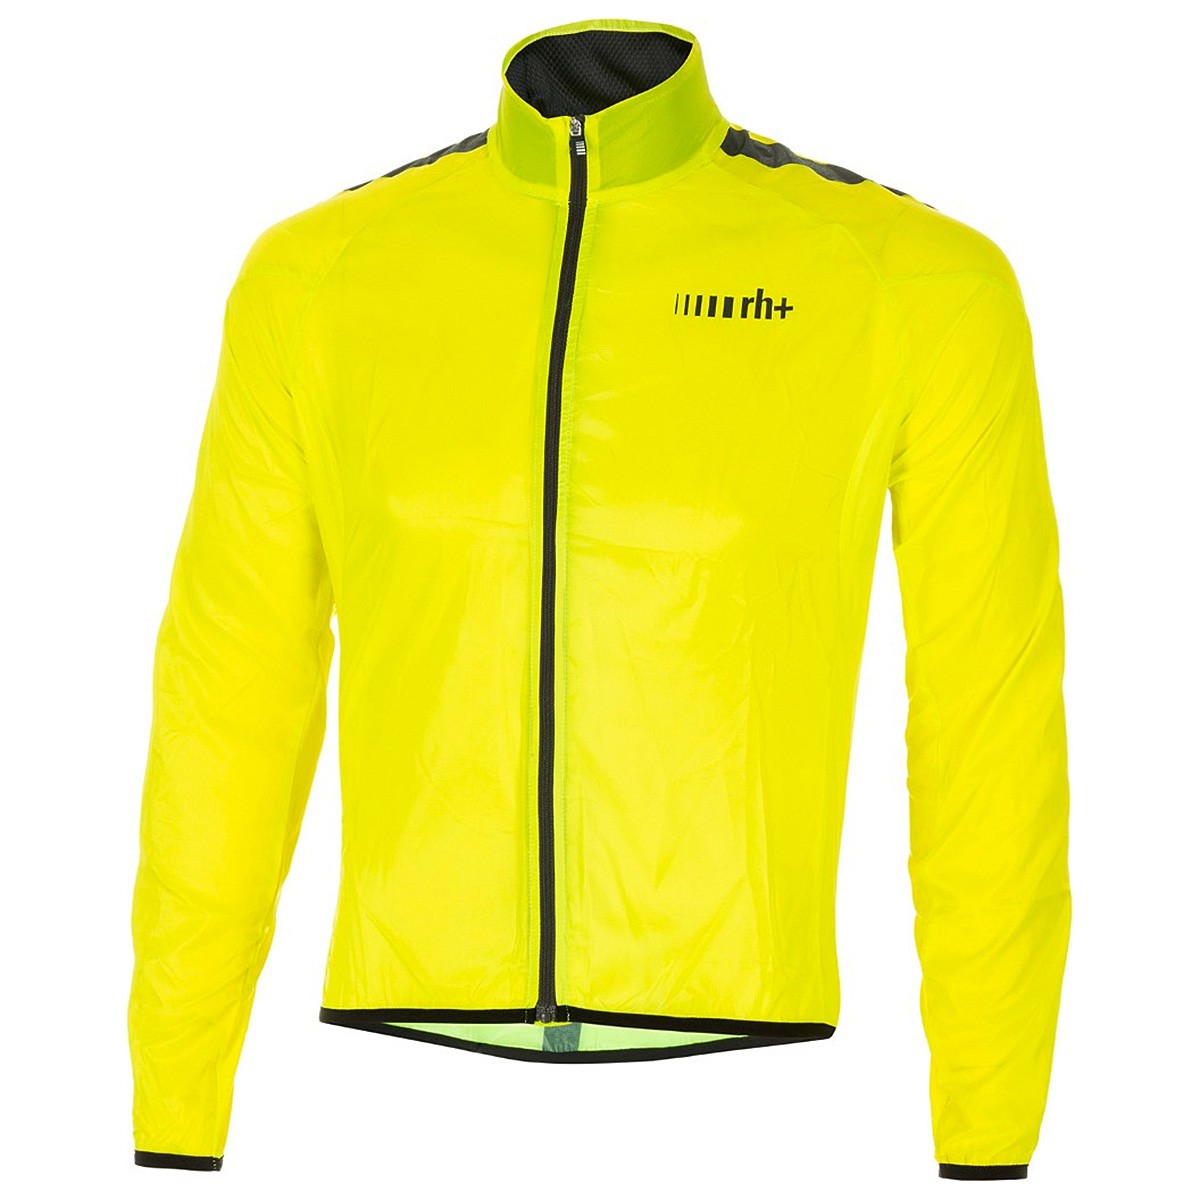 Bike jacket Zero Rh+ Emergency Pocket Unisex yellow | EN